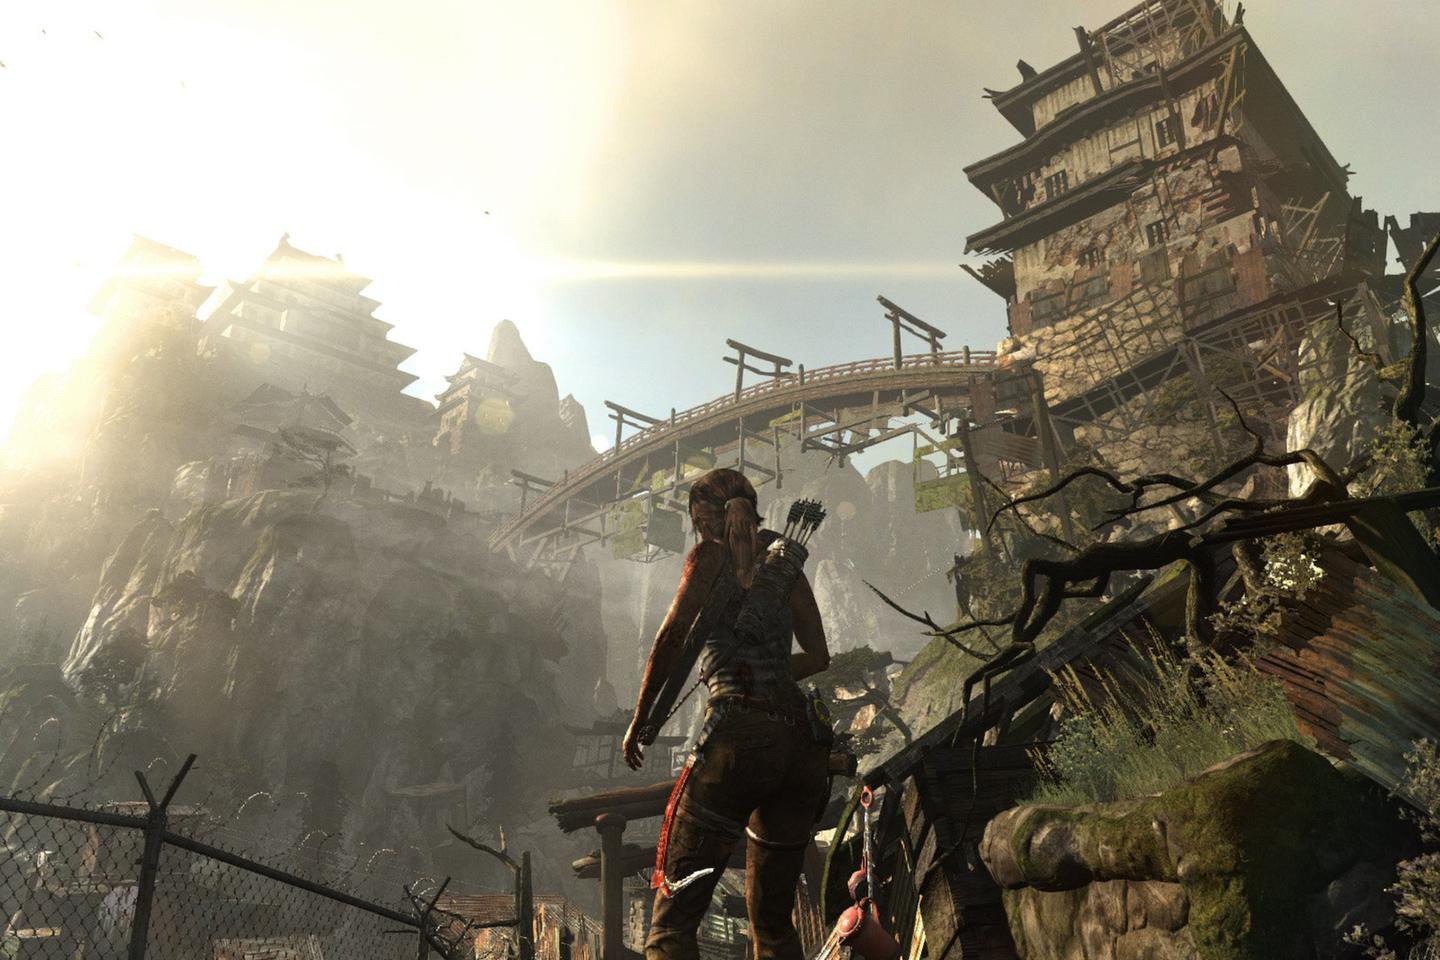 Lara standing below tomb bridge cast in sunlight.